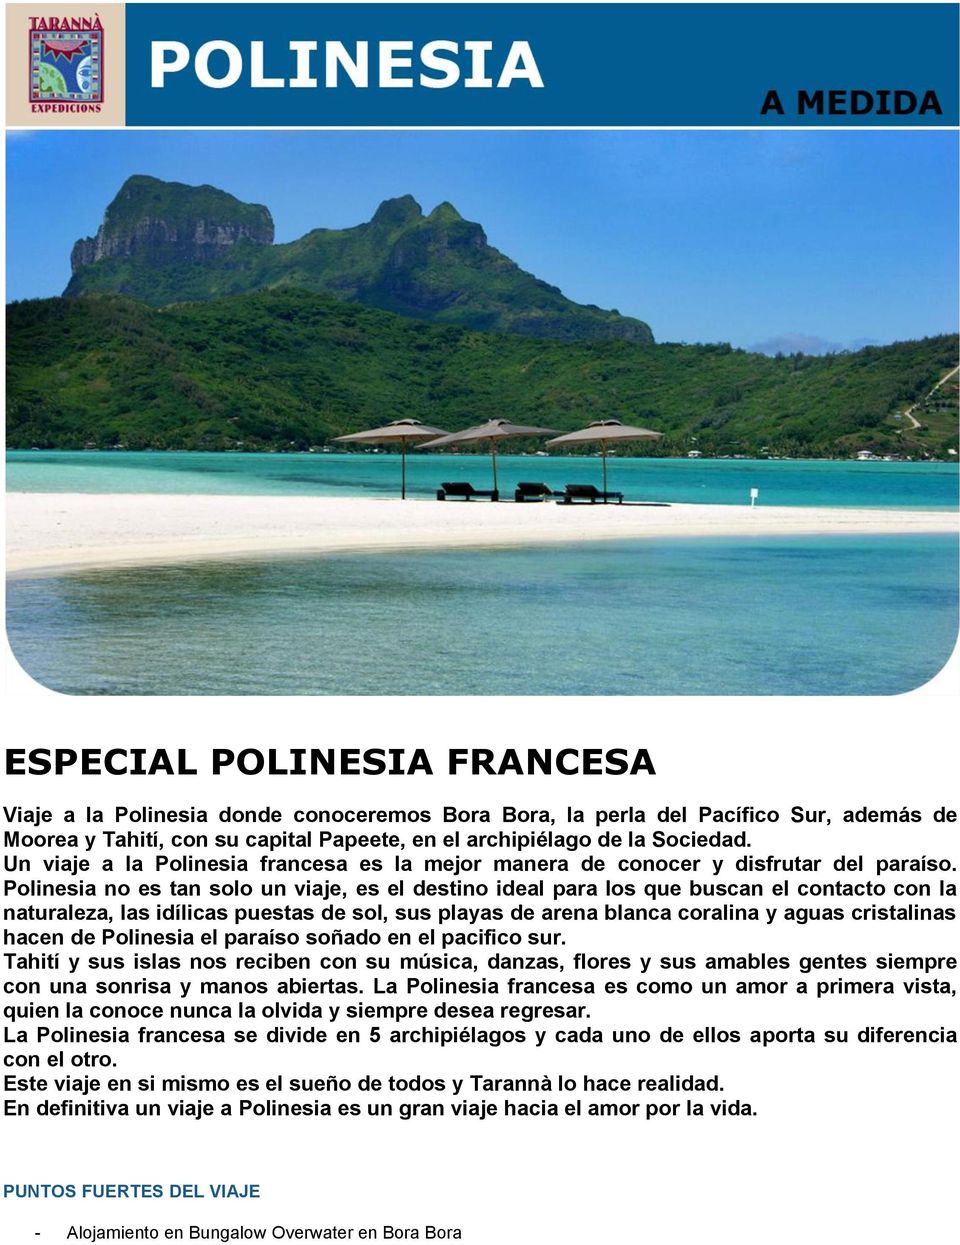 Polinesia no es tan solo un viaje, es el destino ideal para los que buscan el contacto con la naturaleza, las idílicas puestas de sol, sus playas de arena blanca coralina y aguas cristalinas hacen de